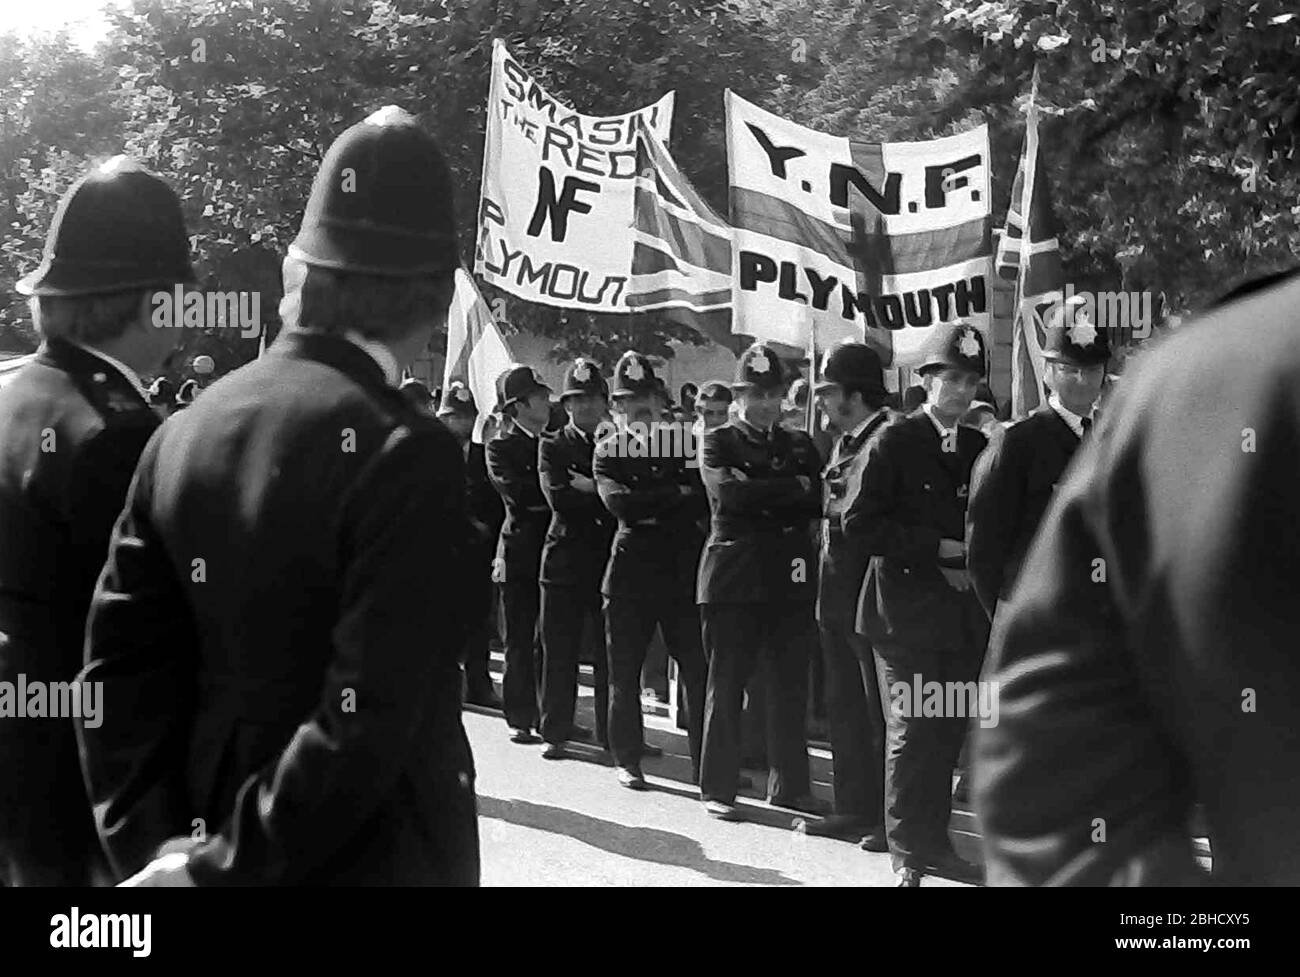 Une marche du Front National d'extrême droite, Londres, Angleterre, Royaume-Uni, entourée de policiers, septembre 1978. Le même jour, une marche de la Ligue anti-nazie a eu lieu à Londres, donc la police y était en grand nombre. Banque D'Images